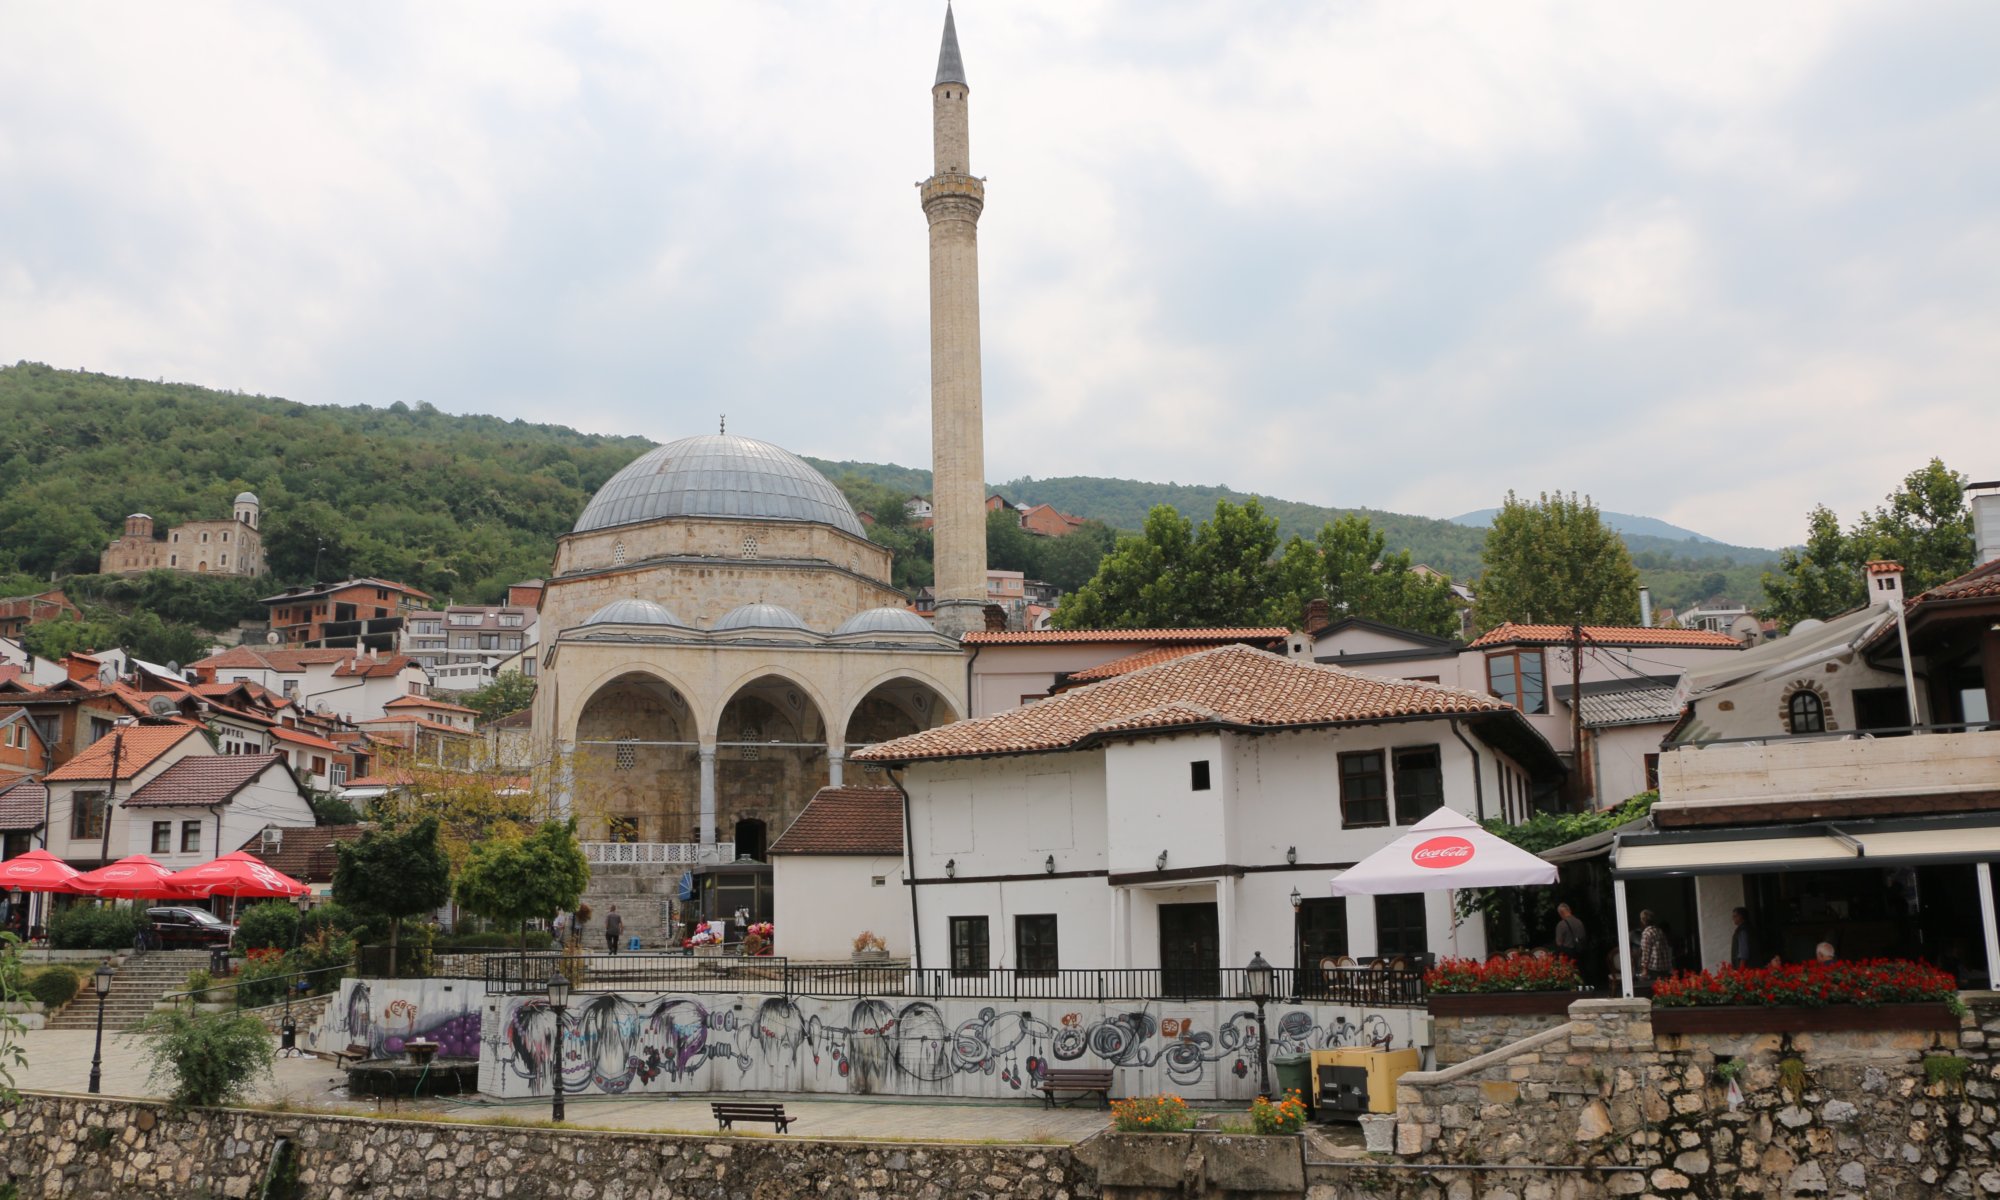 Prizren, Kosovo